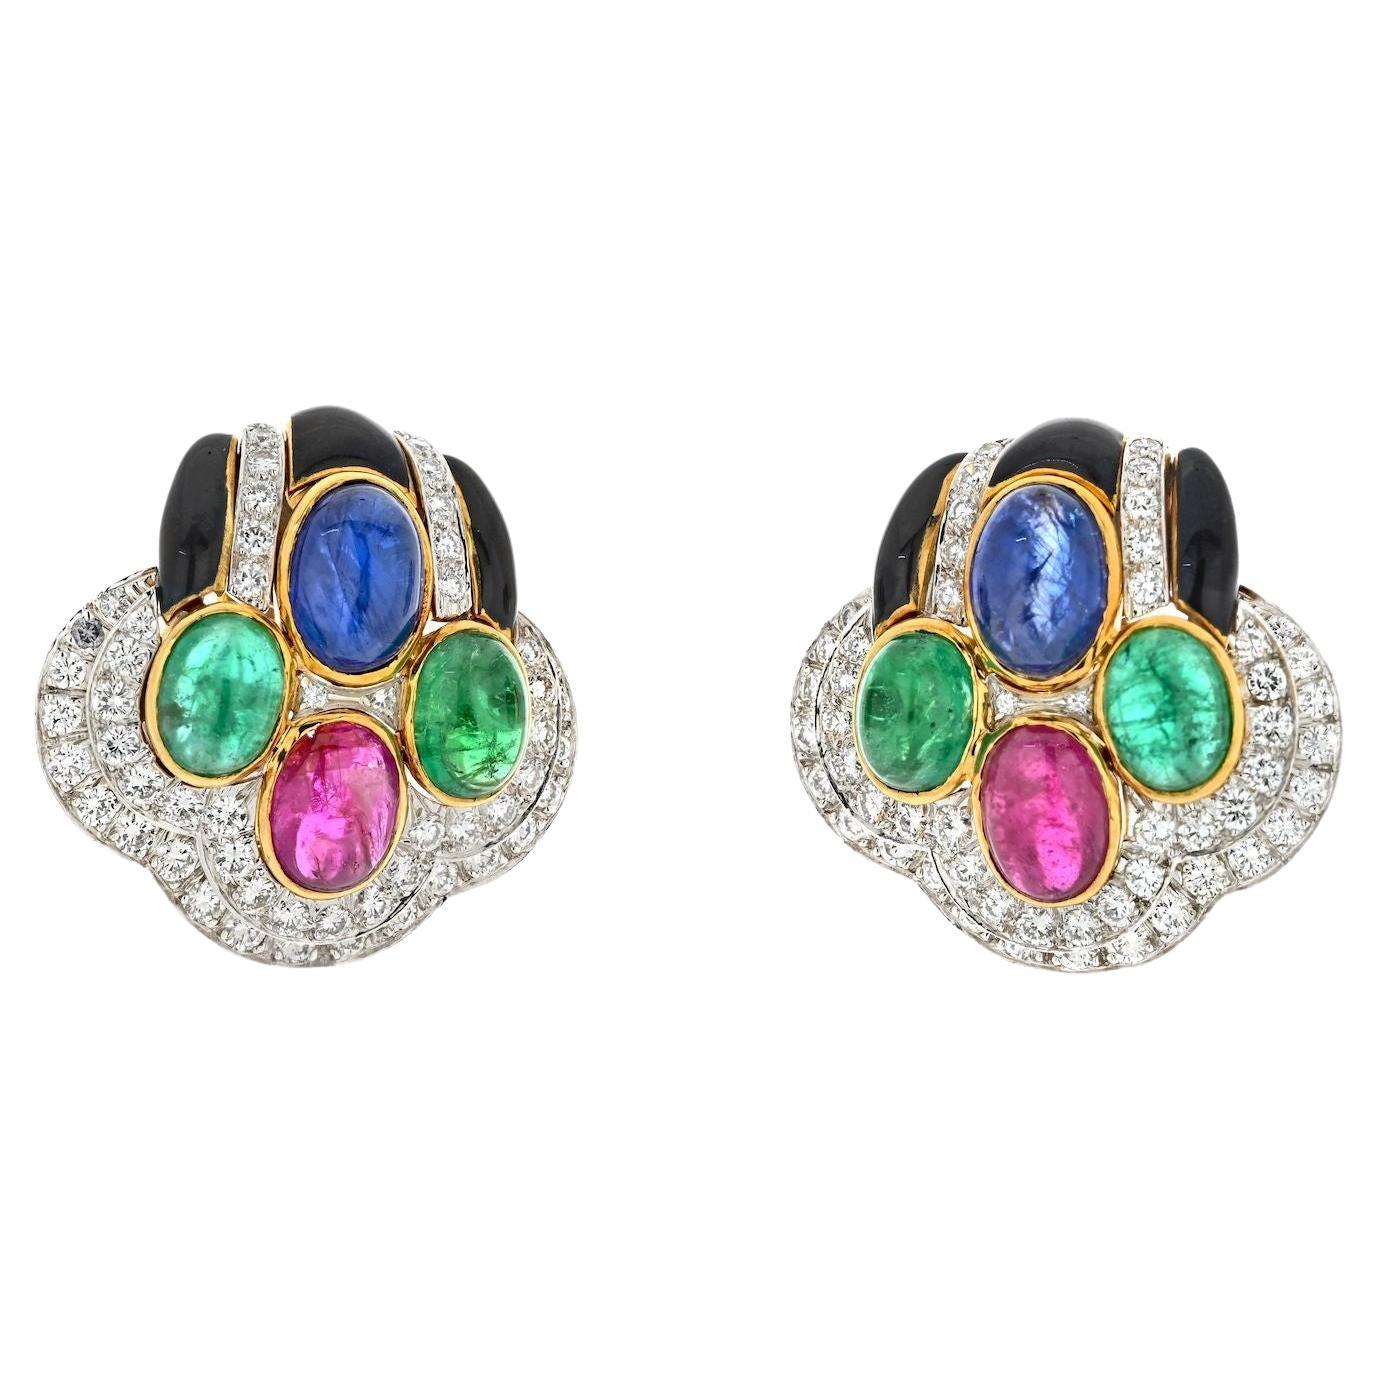 David Webb 18k Yellow Gold Black Enamel Diamond Sapphire Emerald Ruby Earrings